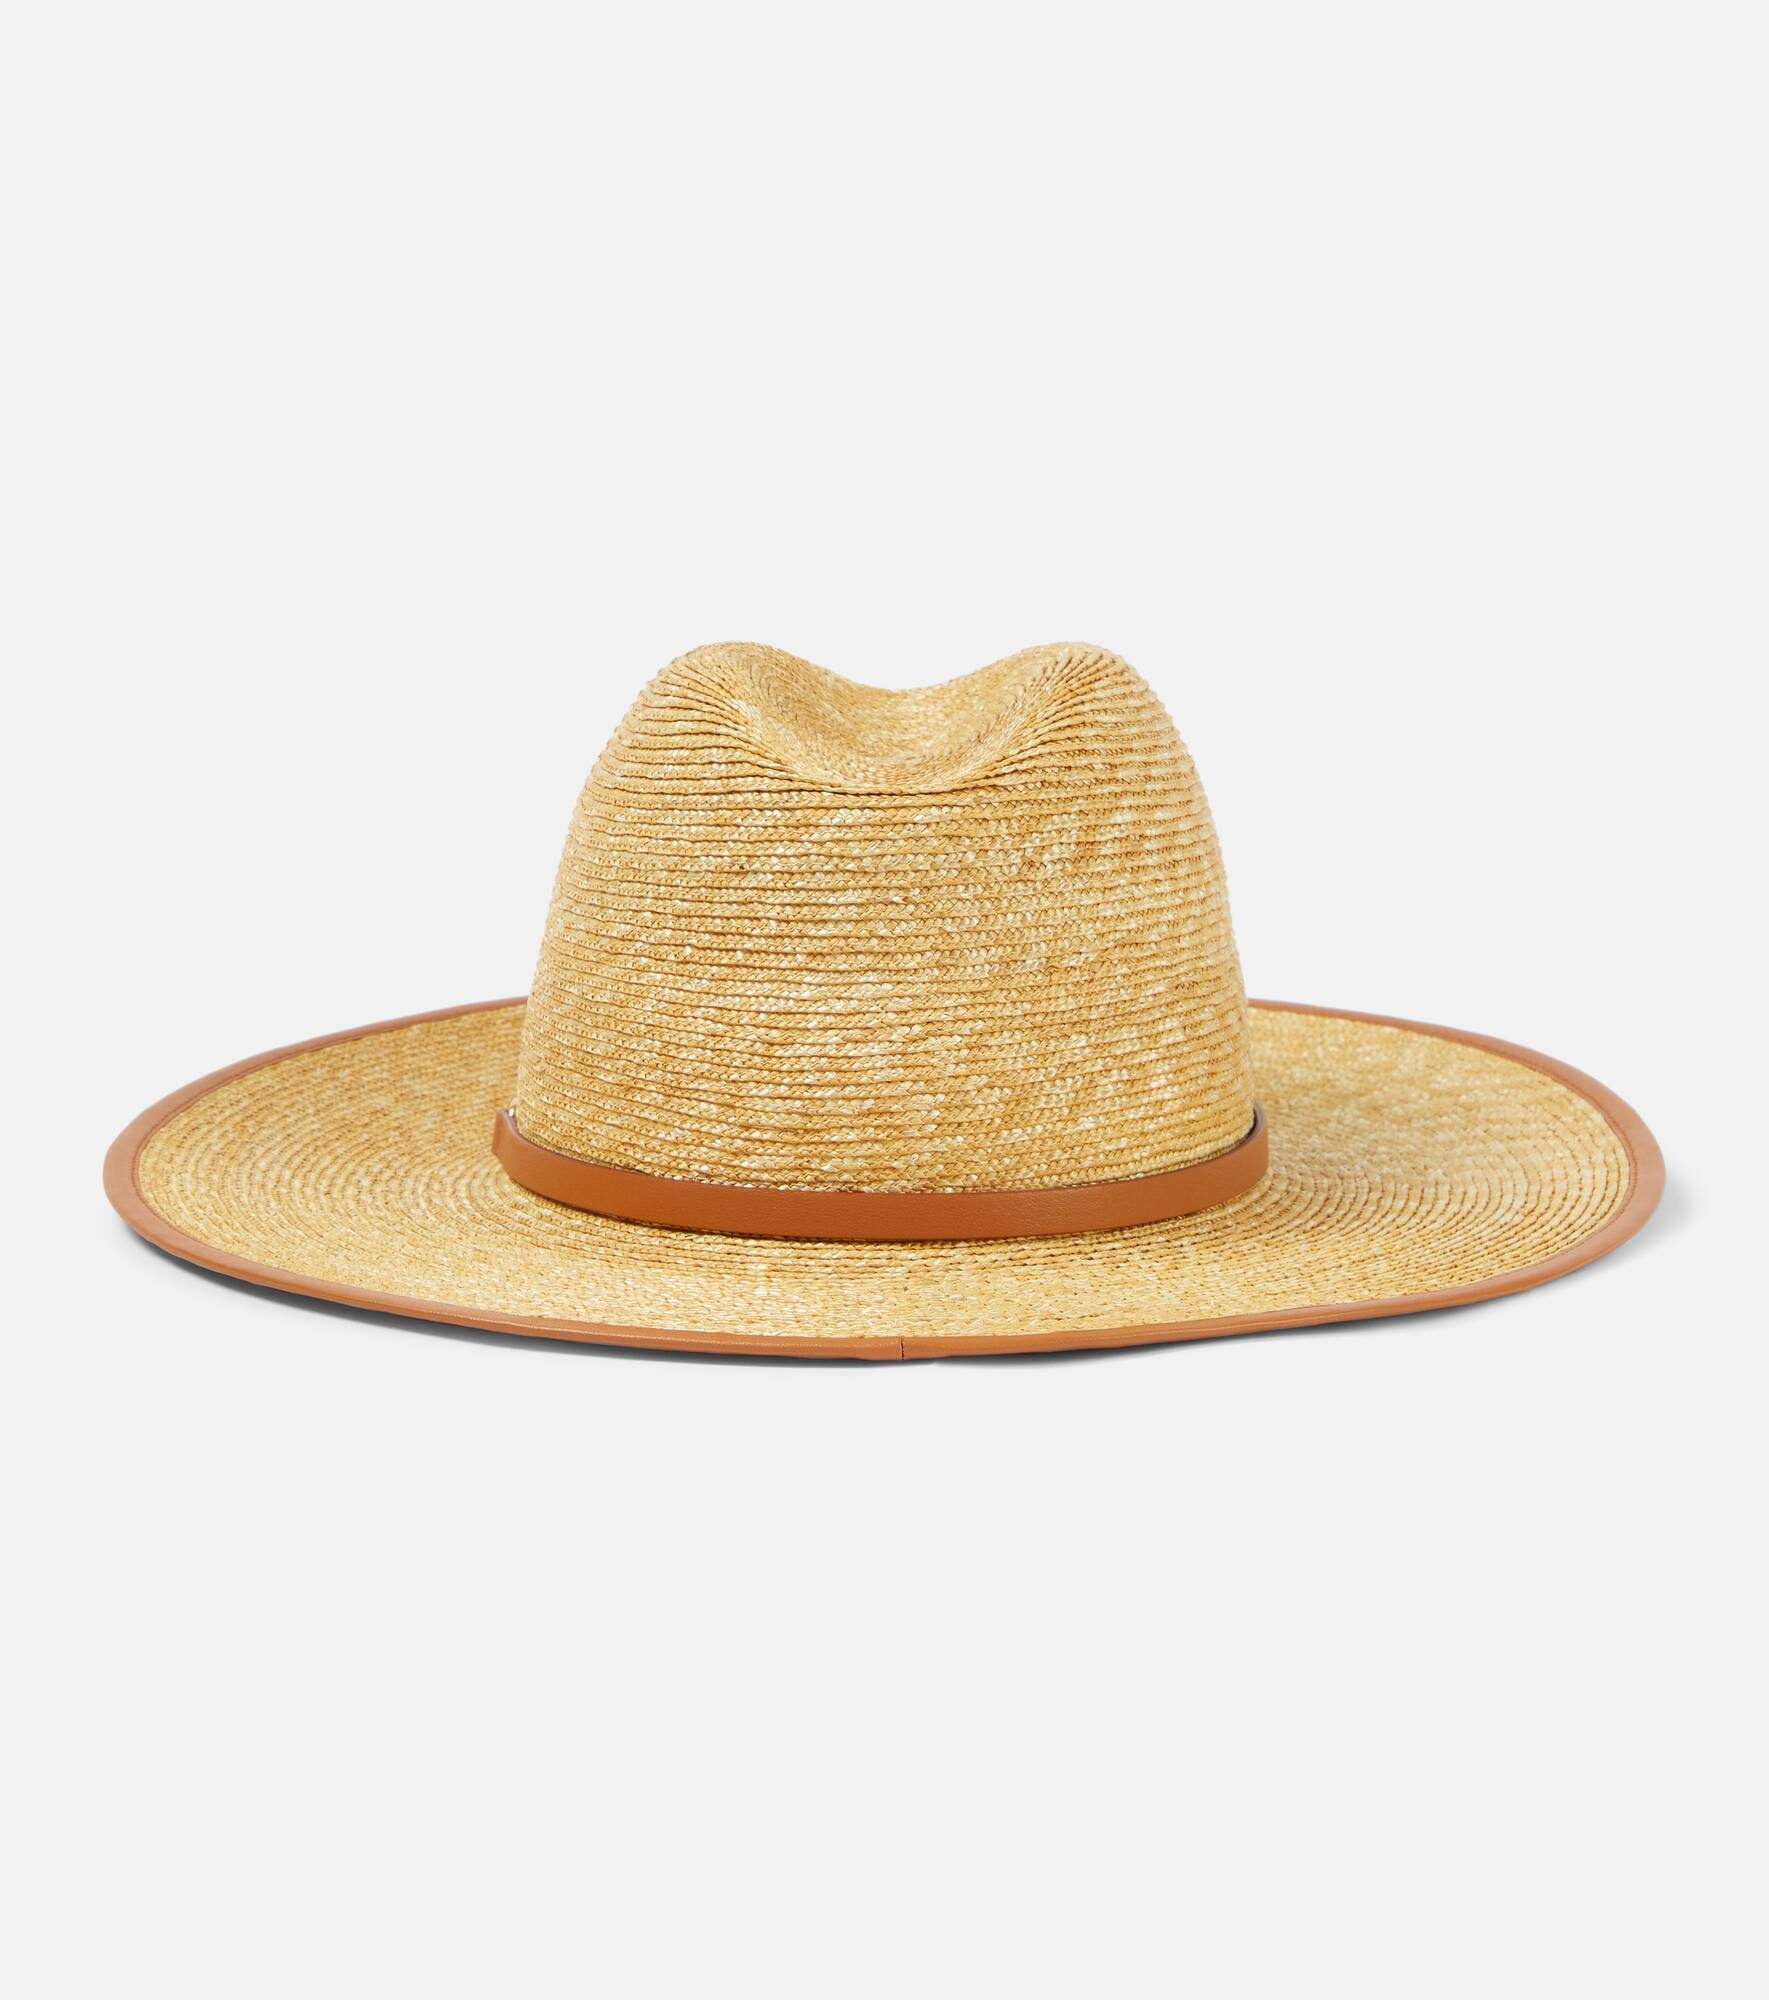 VLogo Signature straw Panama hat - 4